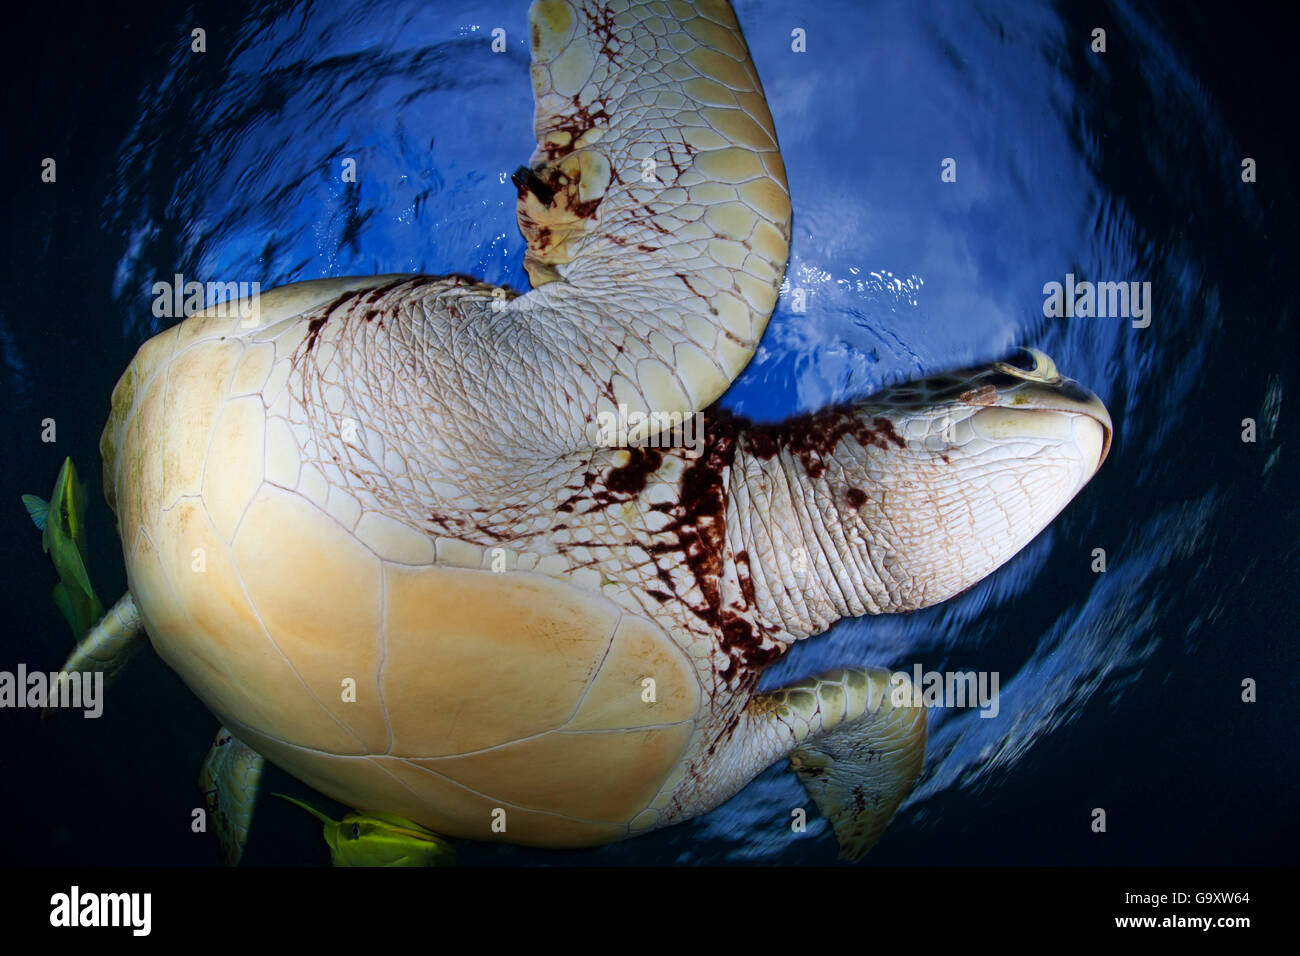 La tortue verte (Chelonia mydas) close up, grand angle vue de dessous, Akumal, mer des Caraïbes, Mexique, janvier. Les espèces en voie de disparition. Banque D'Images